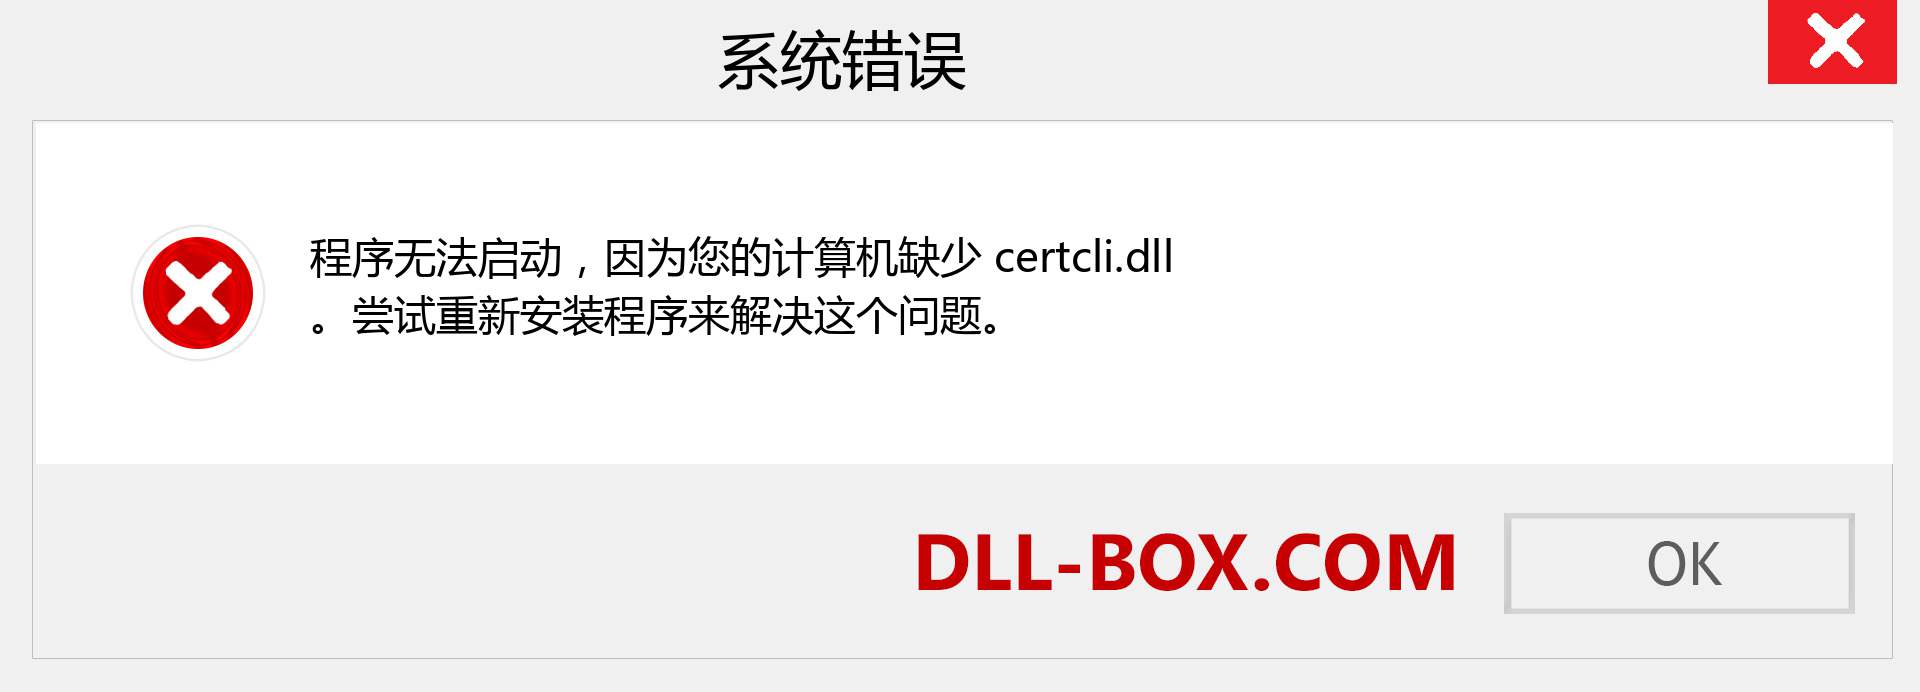 certcli.dll 文件丢失？。 适用于 Windows 7、8、10 的下载 - 修复 Windows、照片、图像上的 certcli dll 丢失错误